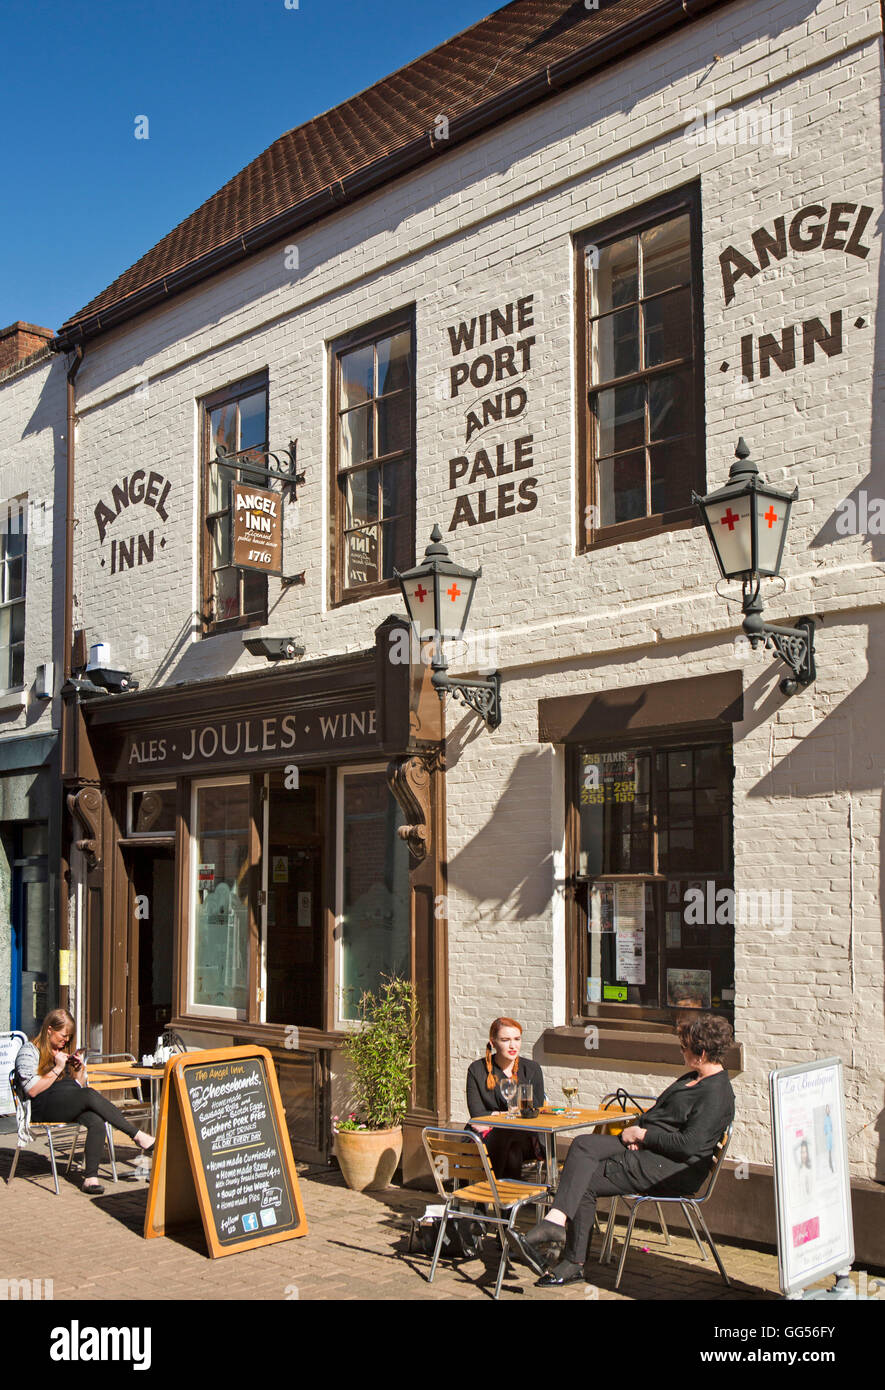 Regno Unito, Inghilterra, Staffordshire, Lichfield, Market Street, i clienti nella luce del sole al di fuori, Joule" birreria Angel Inn Foto Stock